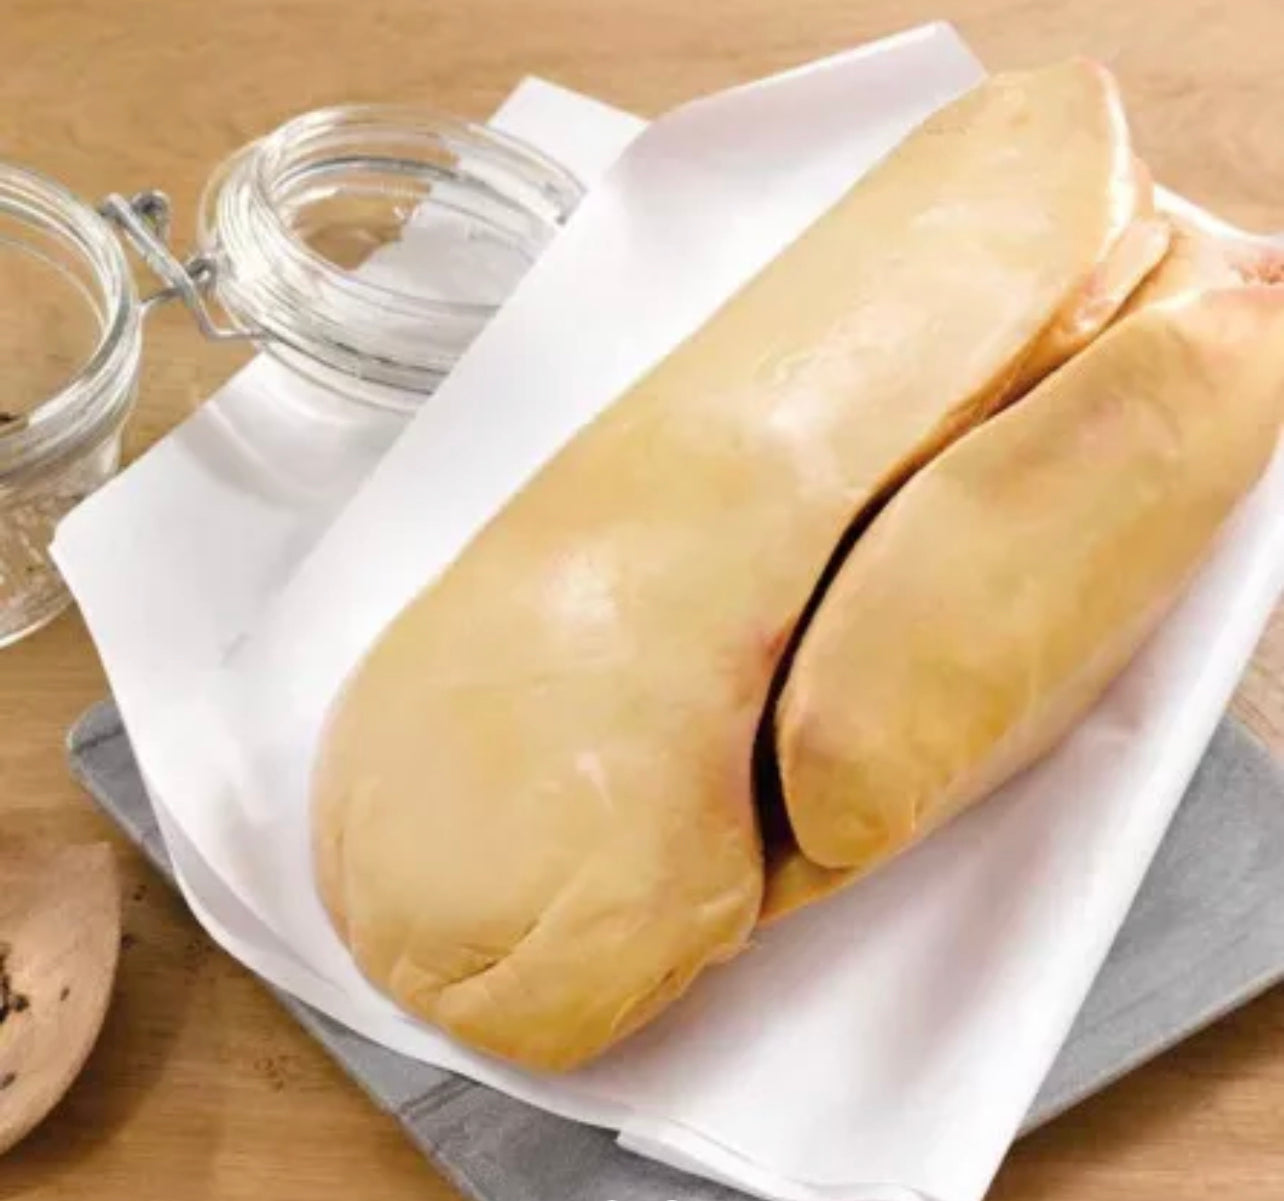 Foie gras de pato crudo desvenado al vacío ±500g